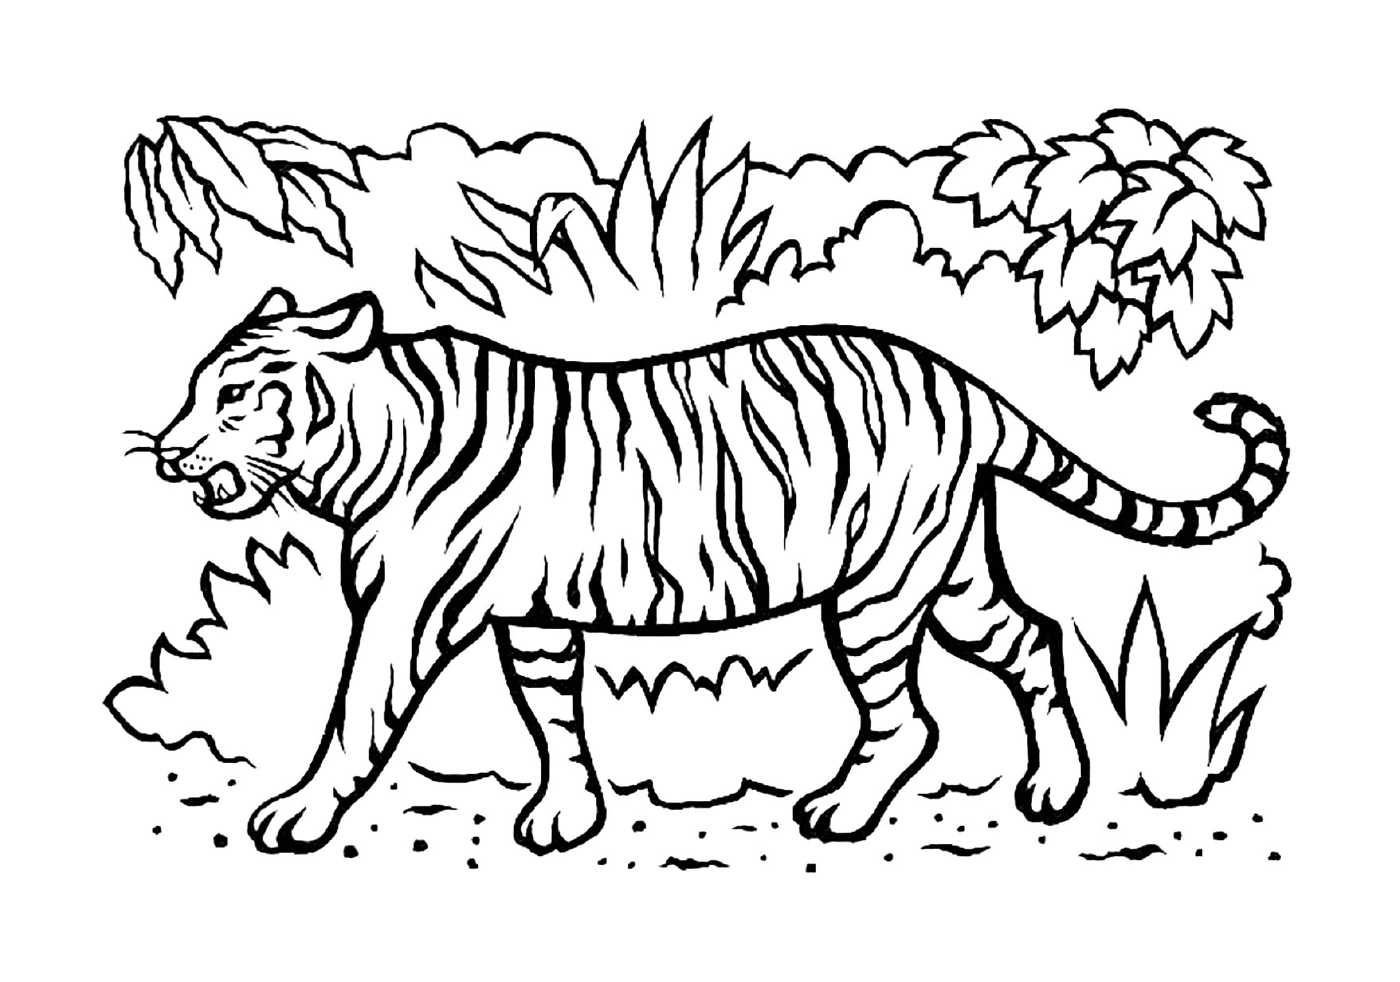   Un magnifique tigre dans la savane 